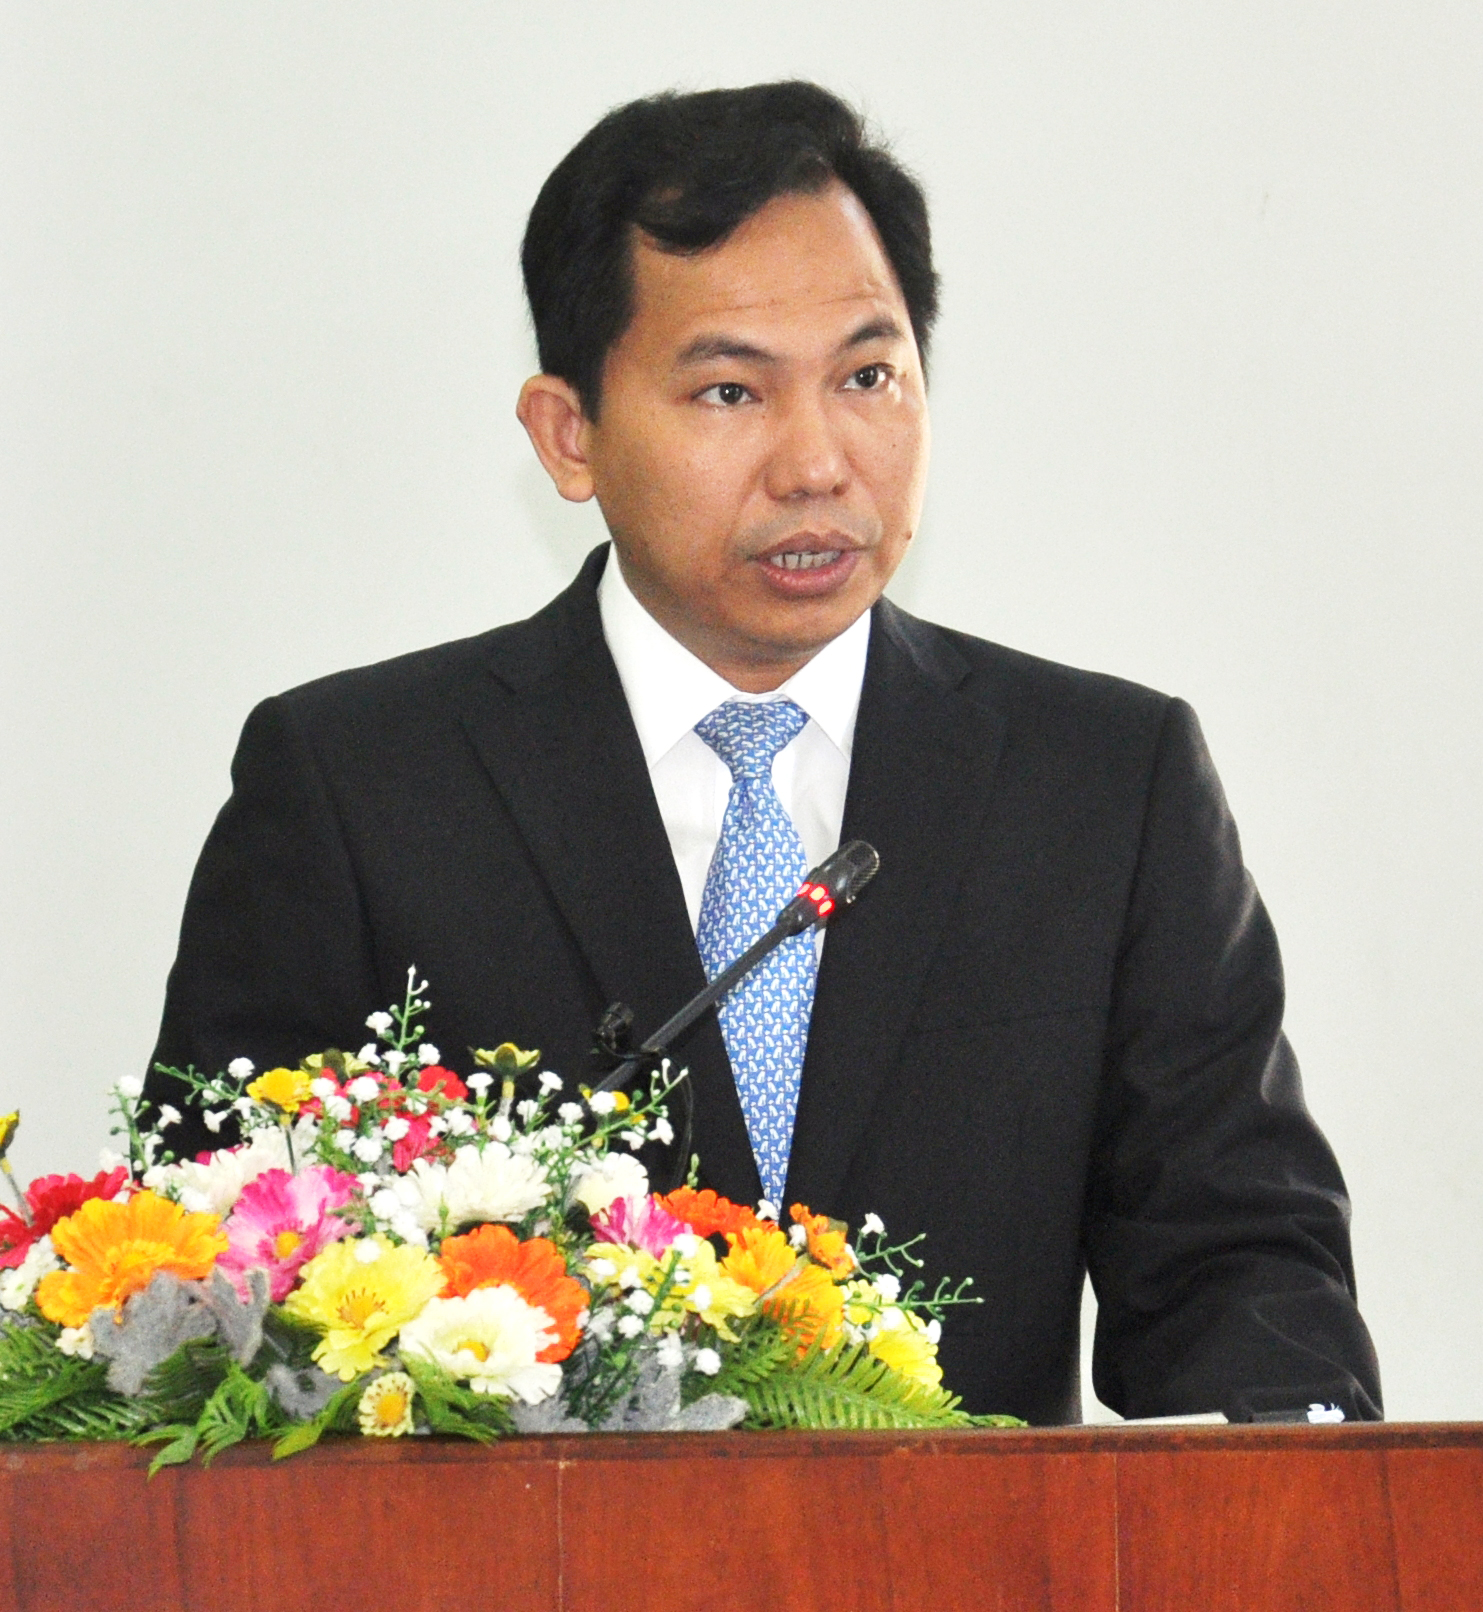 Đồng chí Lê Quang Mạnh phát biểu nhận nhiệm vụ sau khi được HĐND thành phố bầu làm Chủ tịch UBND thành phố. Ảnh: ANH DŨNG